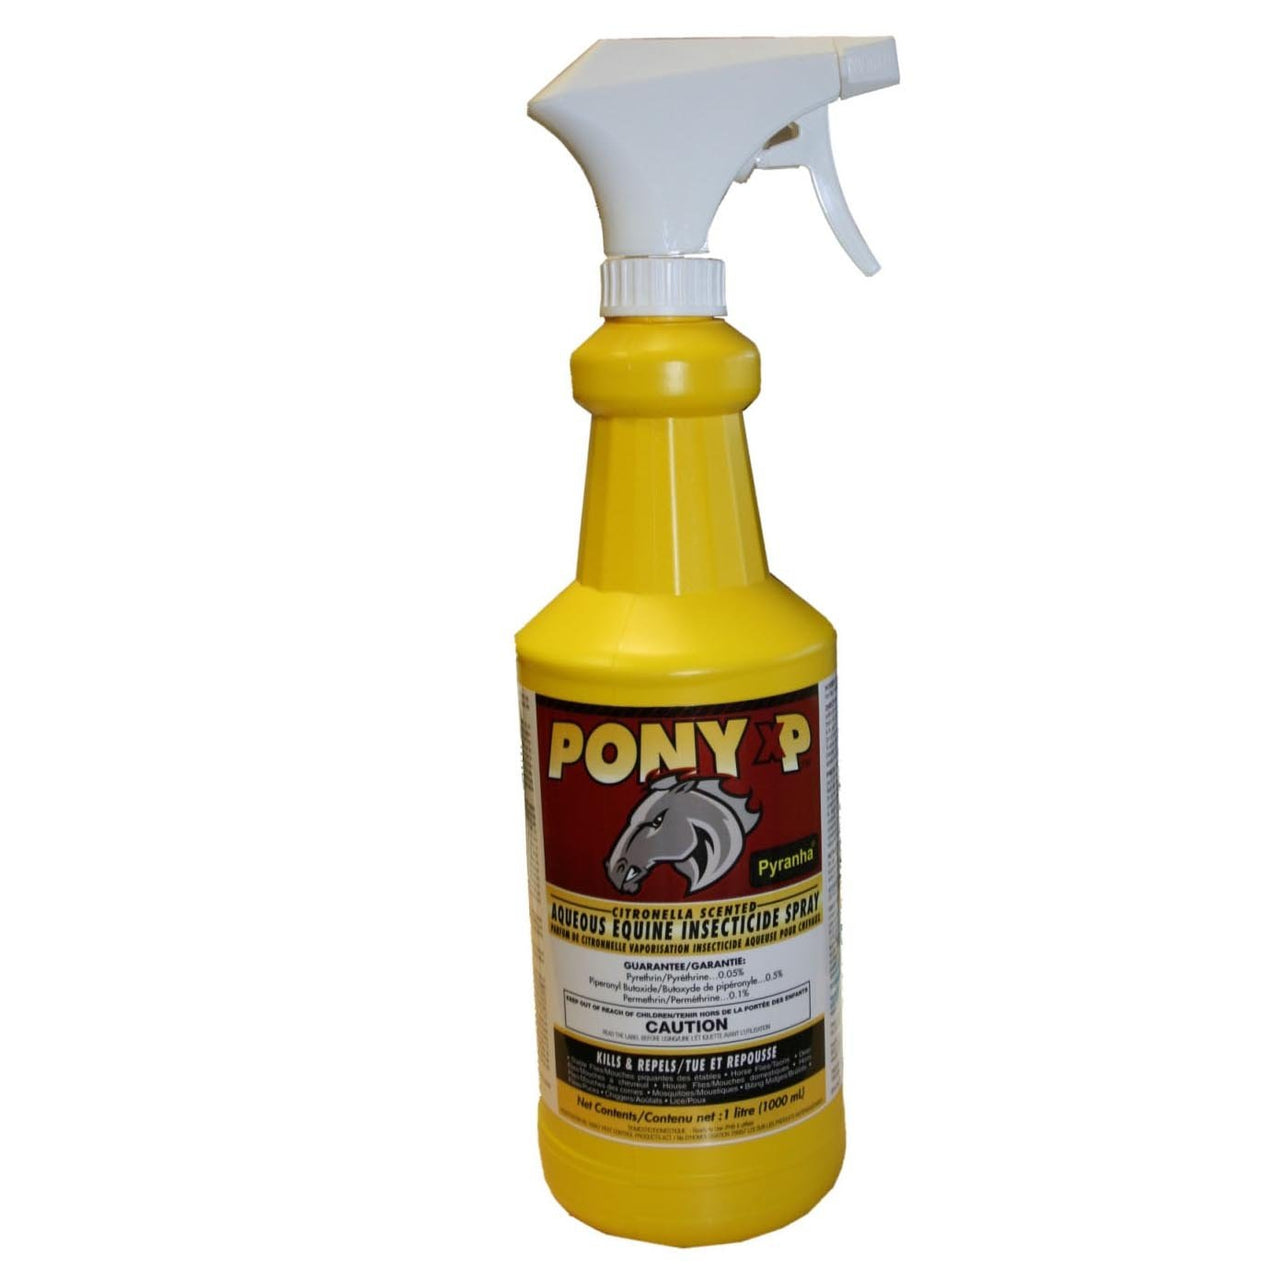 Pony XP Horse Fly Spray 1 Litre